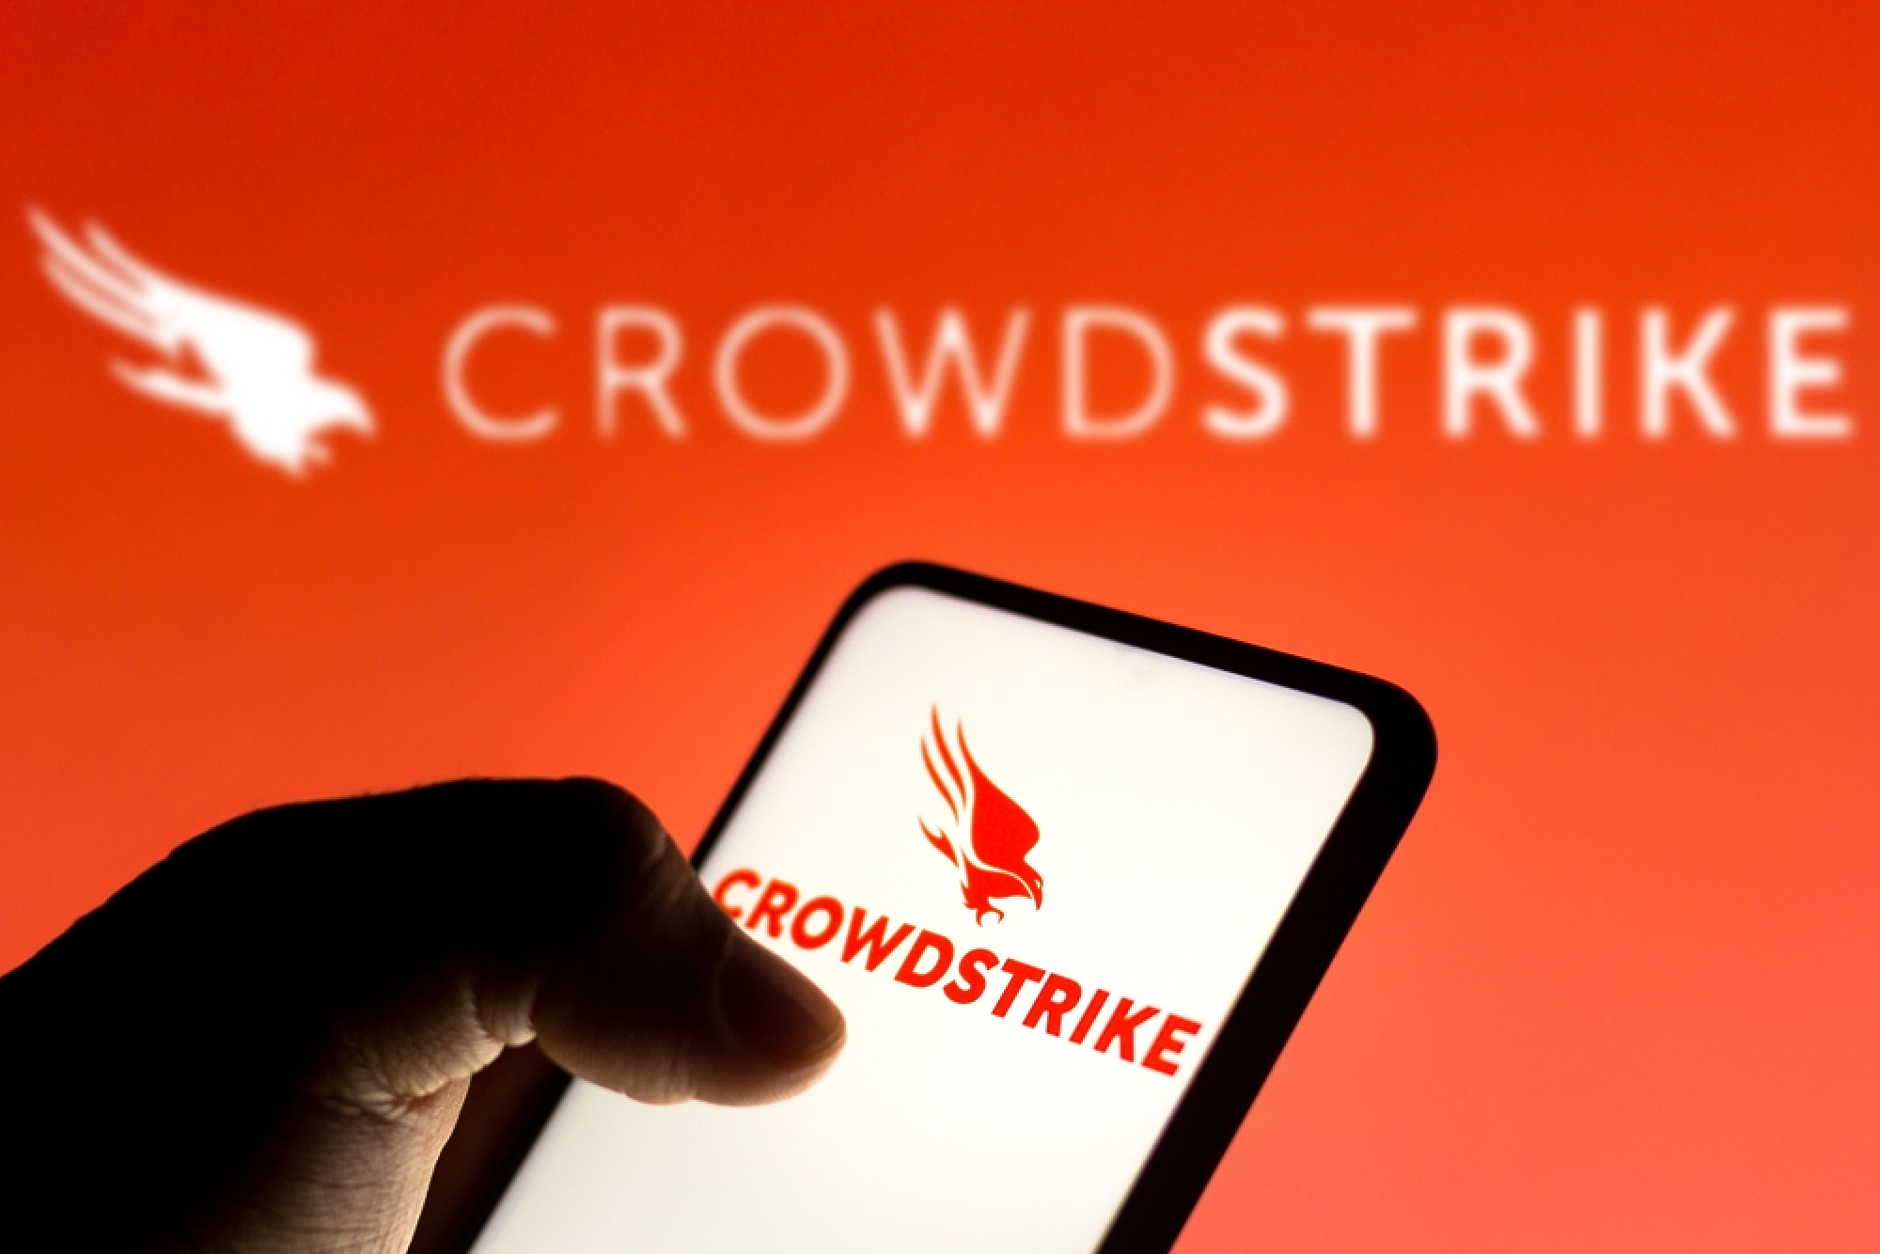 Crowdstrike: Непознатата компания в центъра на глобалния ИТ срив